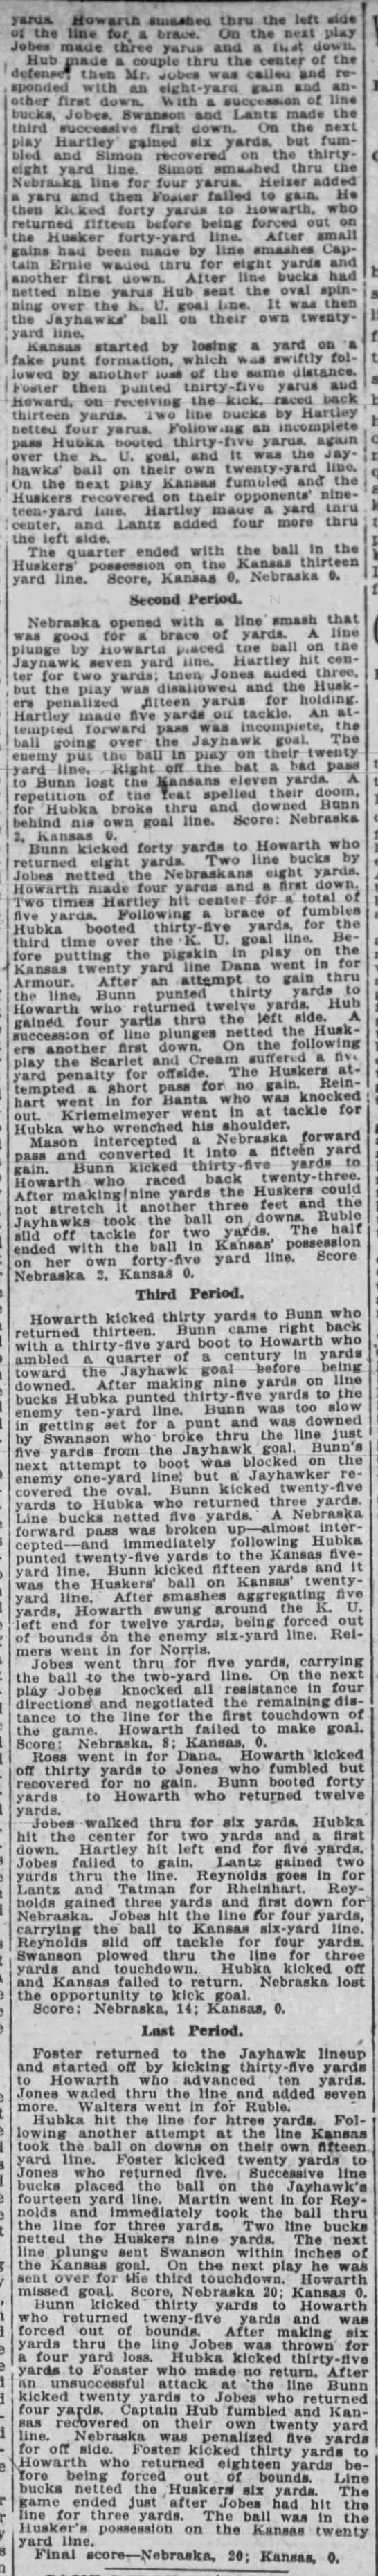 1918 Nebraska-Kansas football, Nebraska State Journal 2 - 